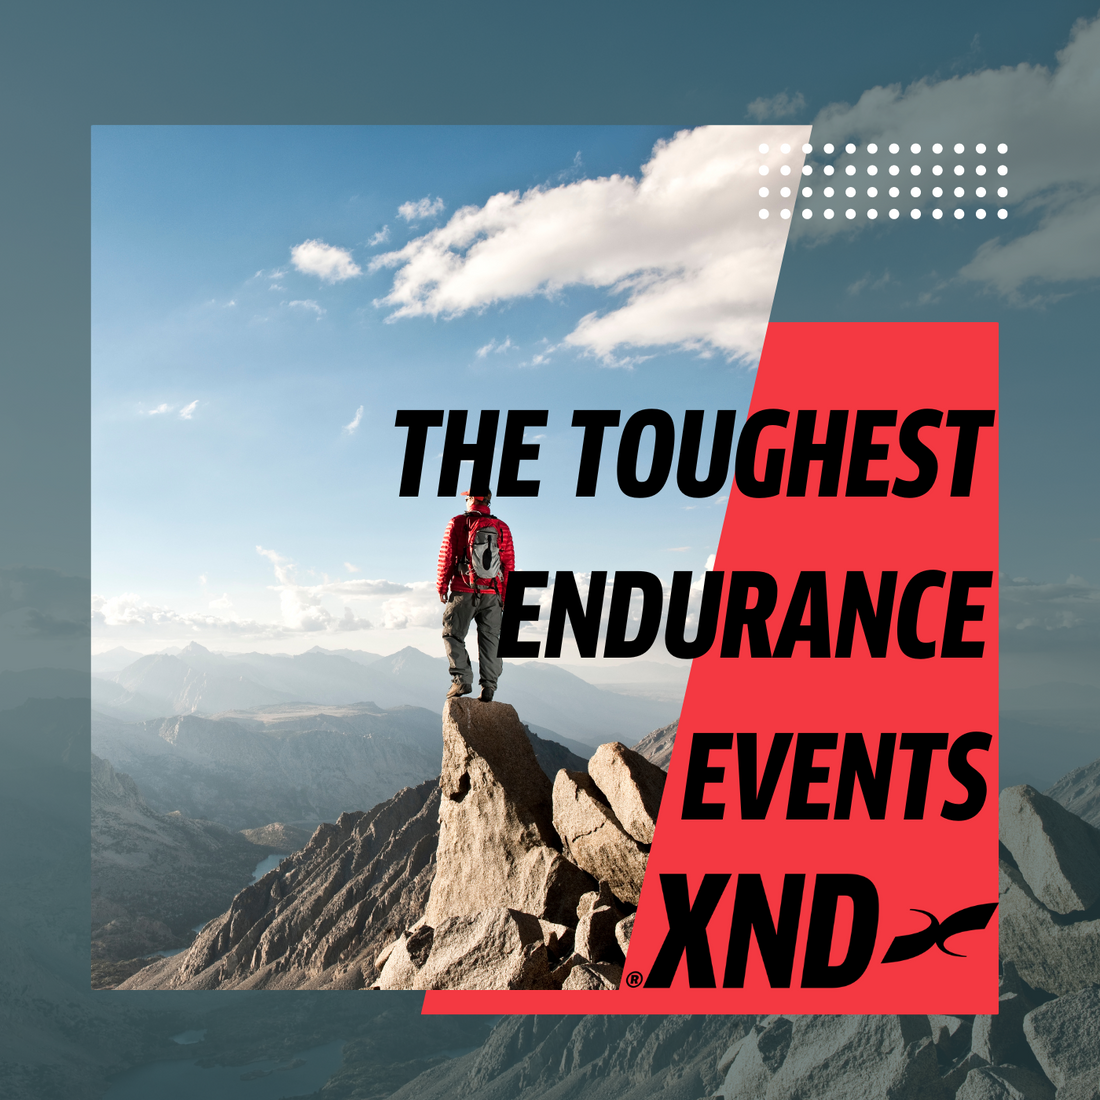 The TOUGHEST endurance events